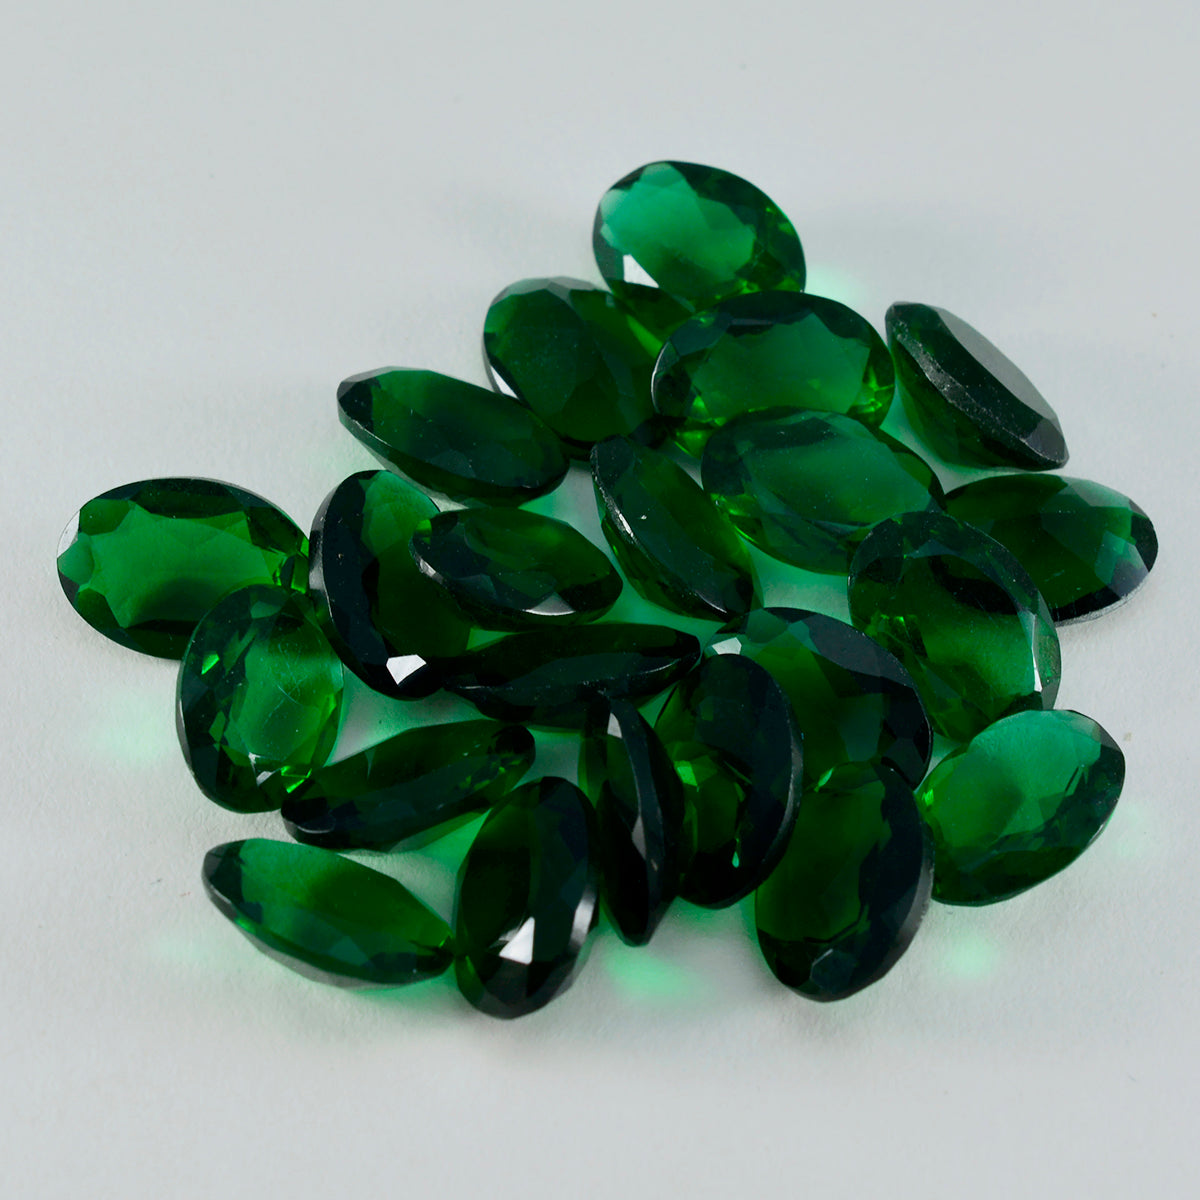 Riyogems 1 Stück grüner Smaragd mit CZ, facettiert, 8 x 10 mm, ovale Form, gut aussehende Qualitätsedelsteine